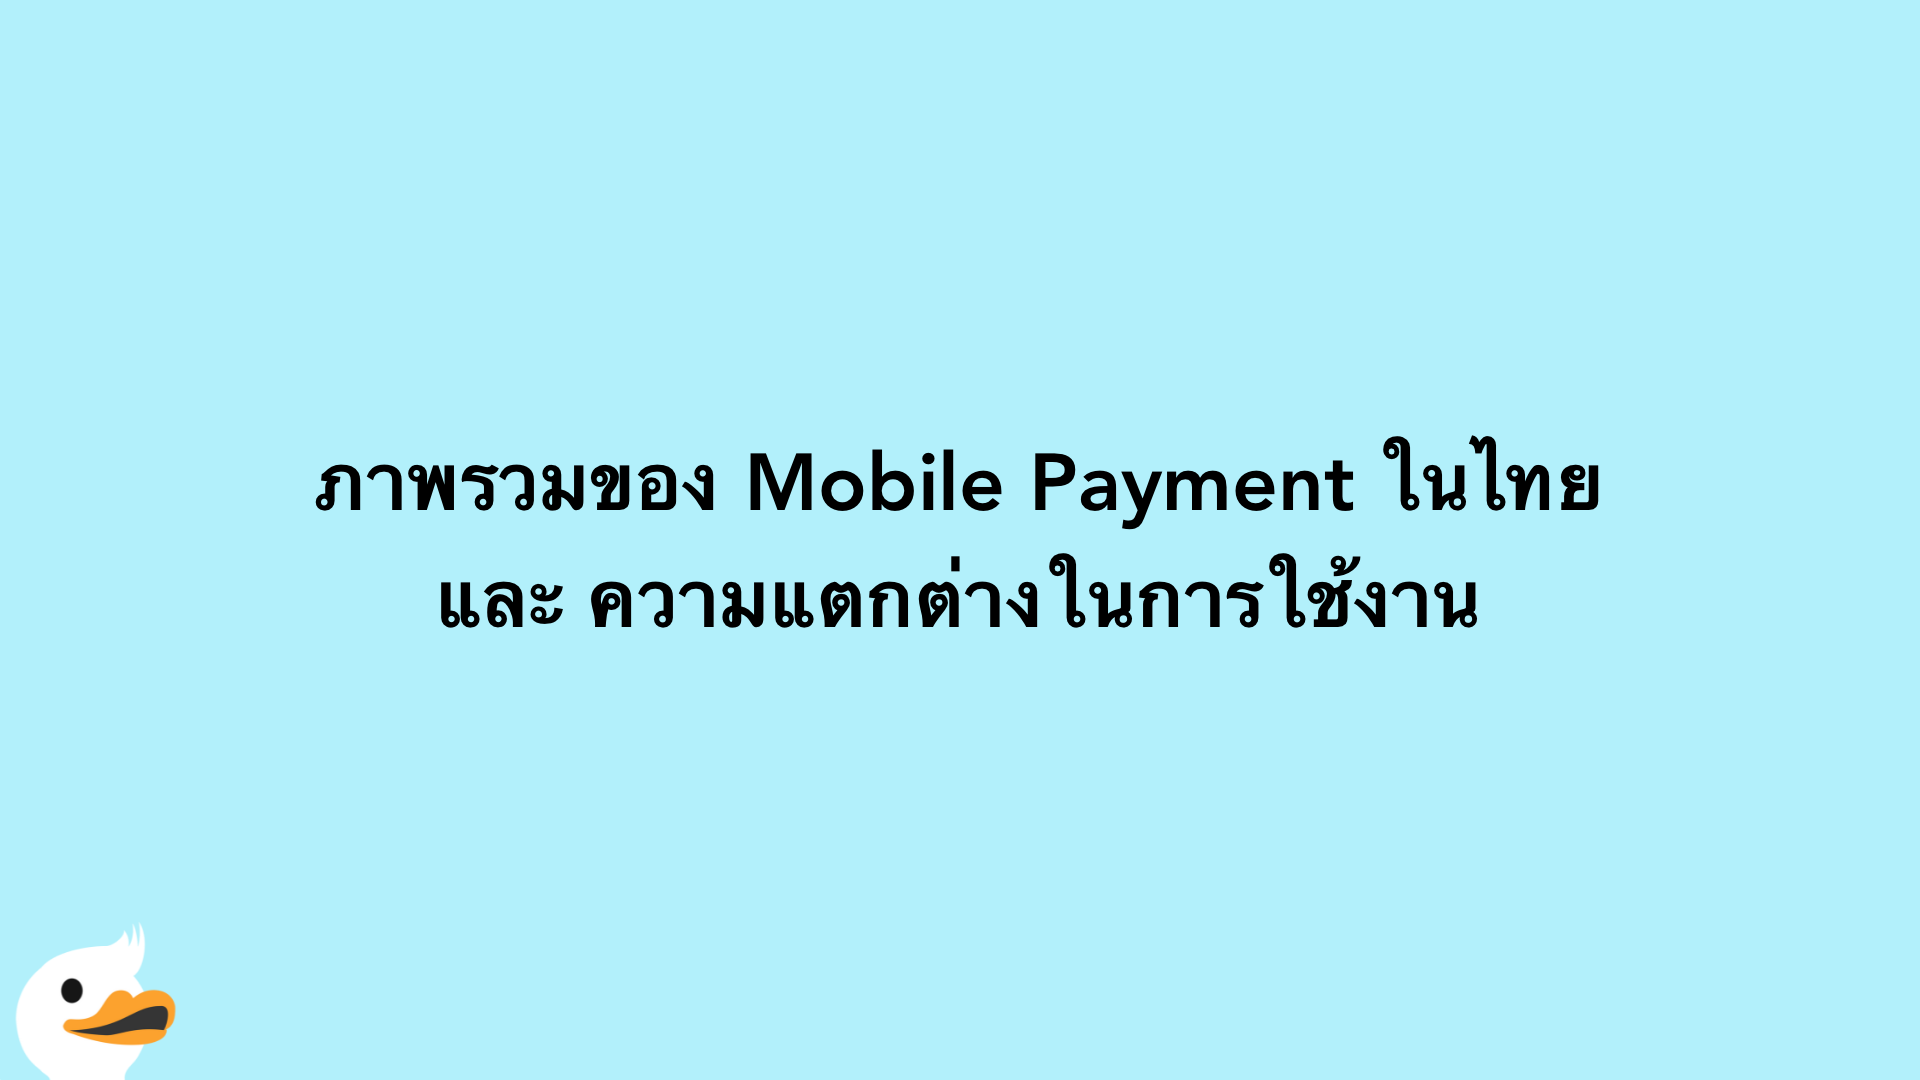 ภาพรวมของ Mobile Payment ในไทยและ ความแตกต่างในการใช้งาน